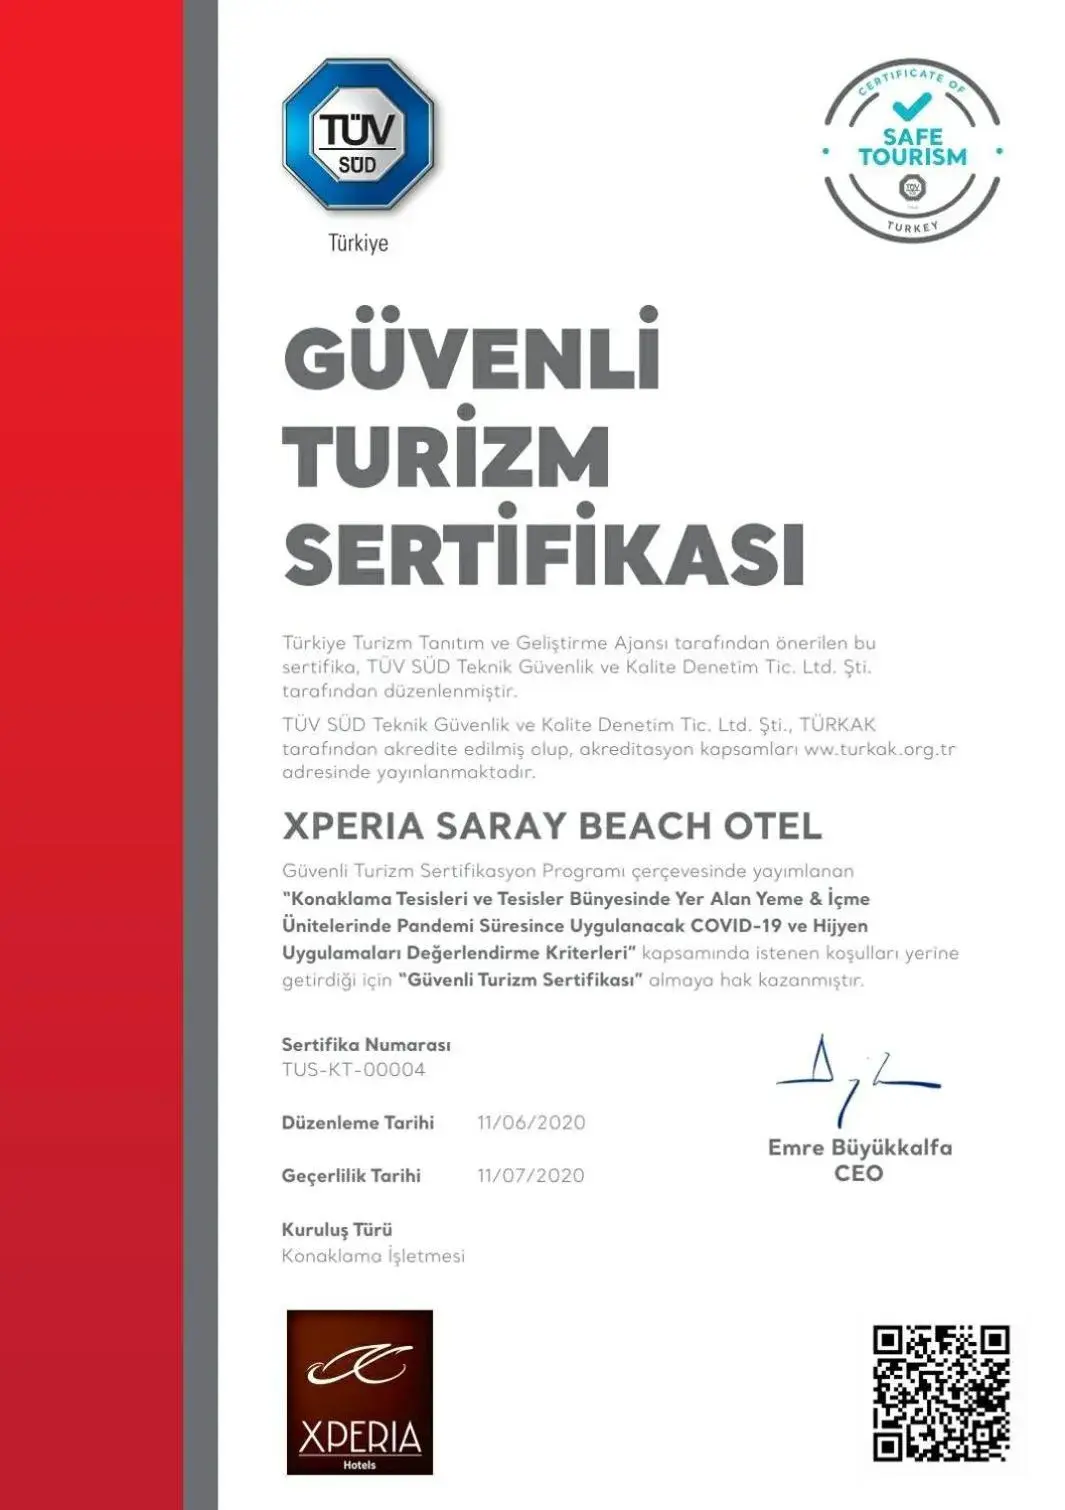 Certificate/Award in Xperia Saray Beach Hotel